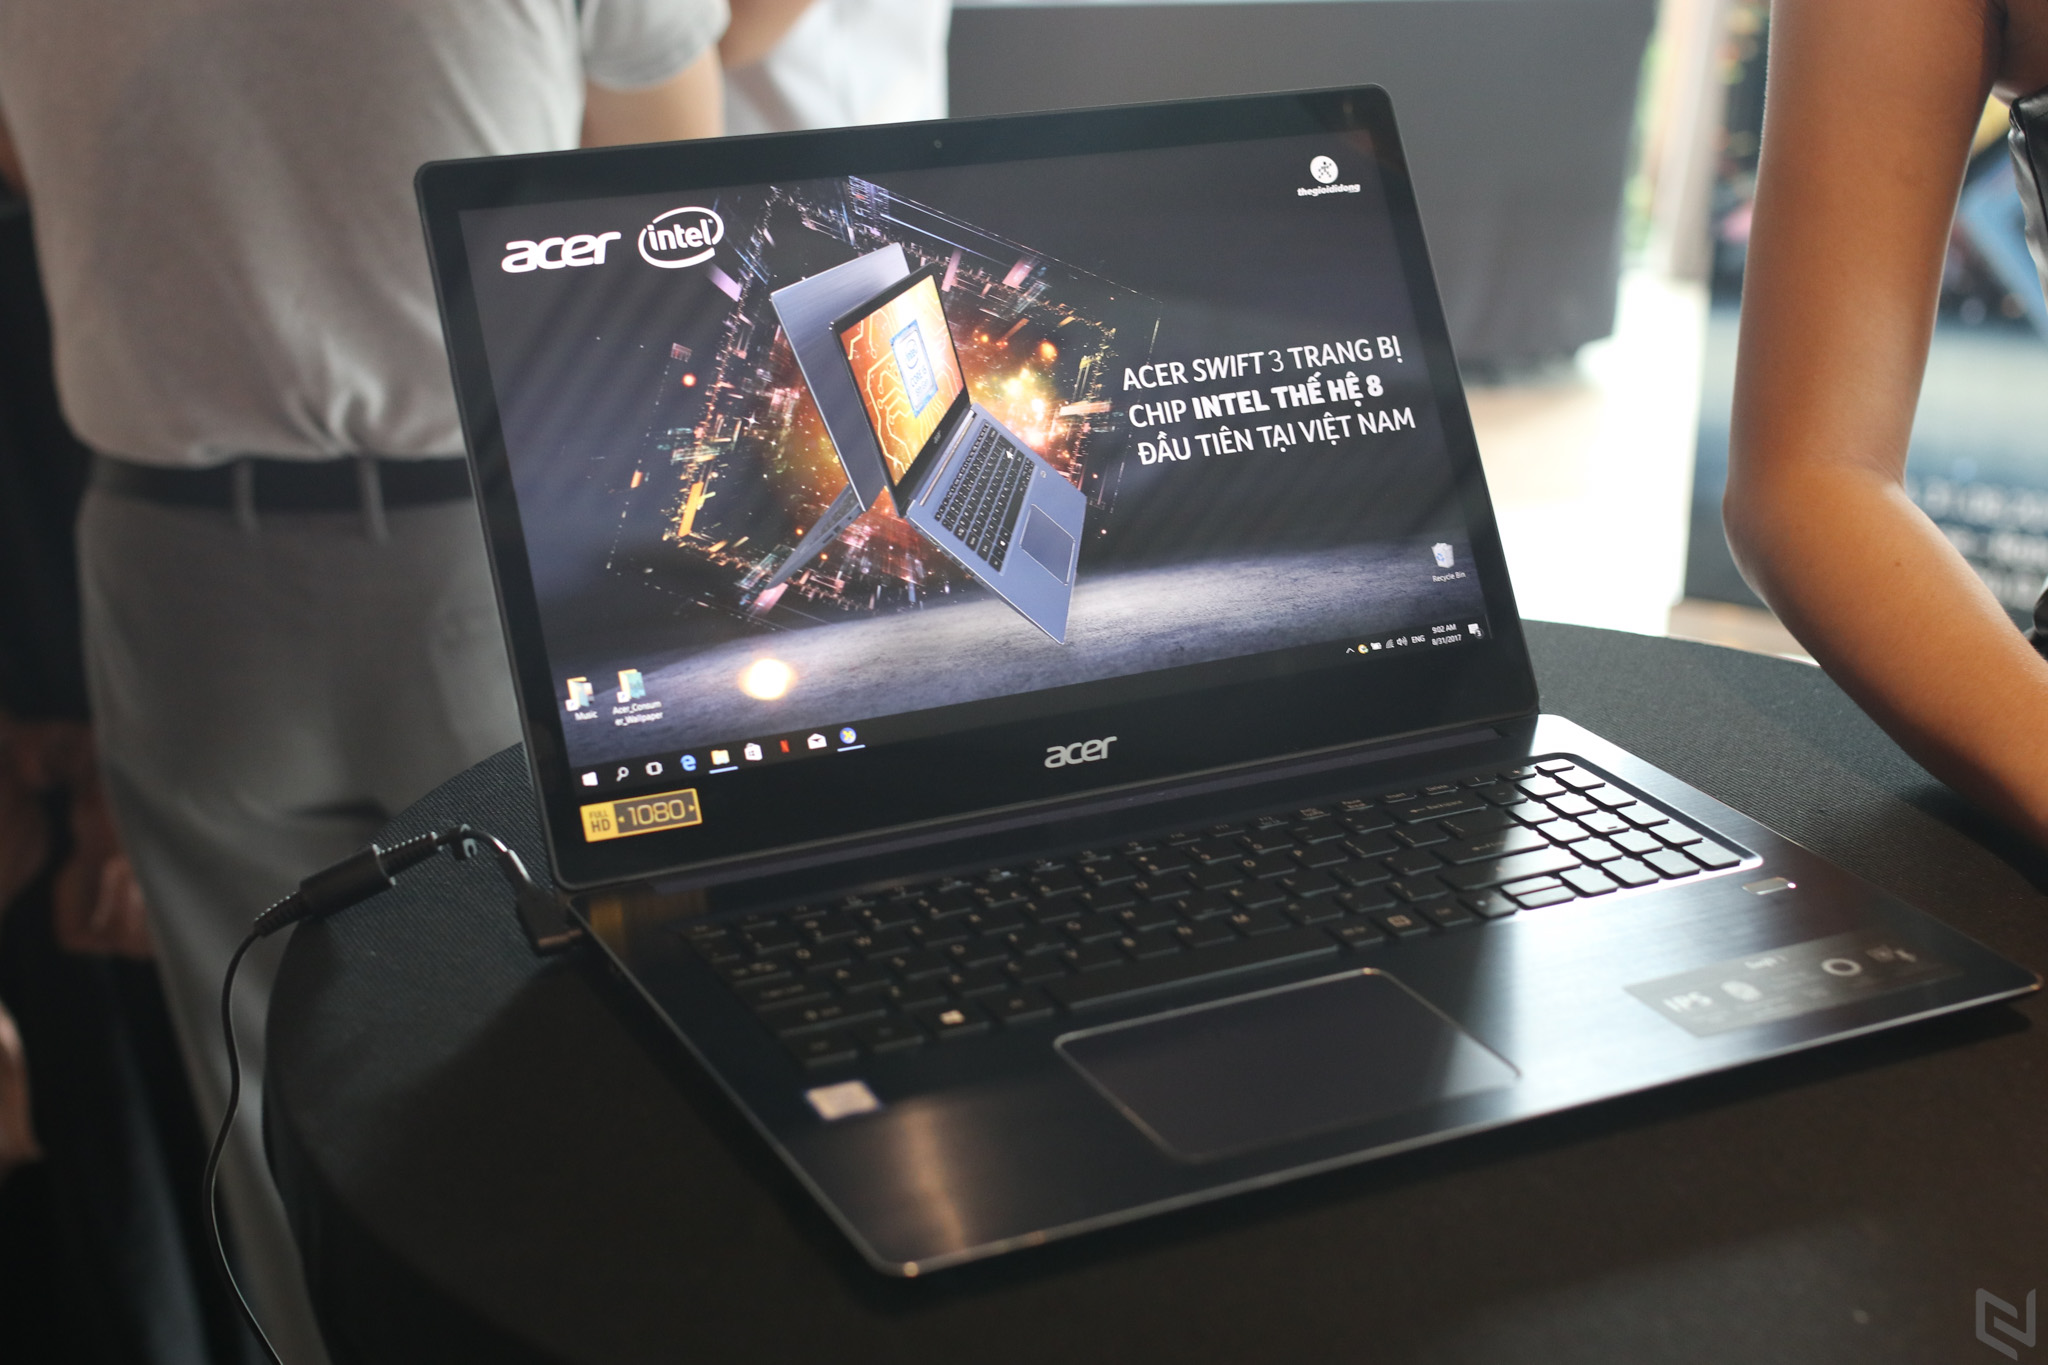 Acer chính thức trình làng Swift 3, laptop chạy vi xử lý Core i thế hệ thứ 8 đầu tiên tại Việt Nam